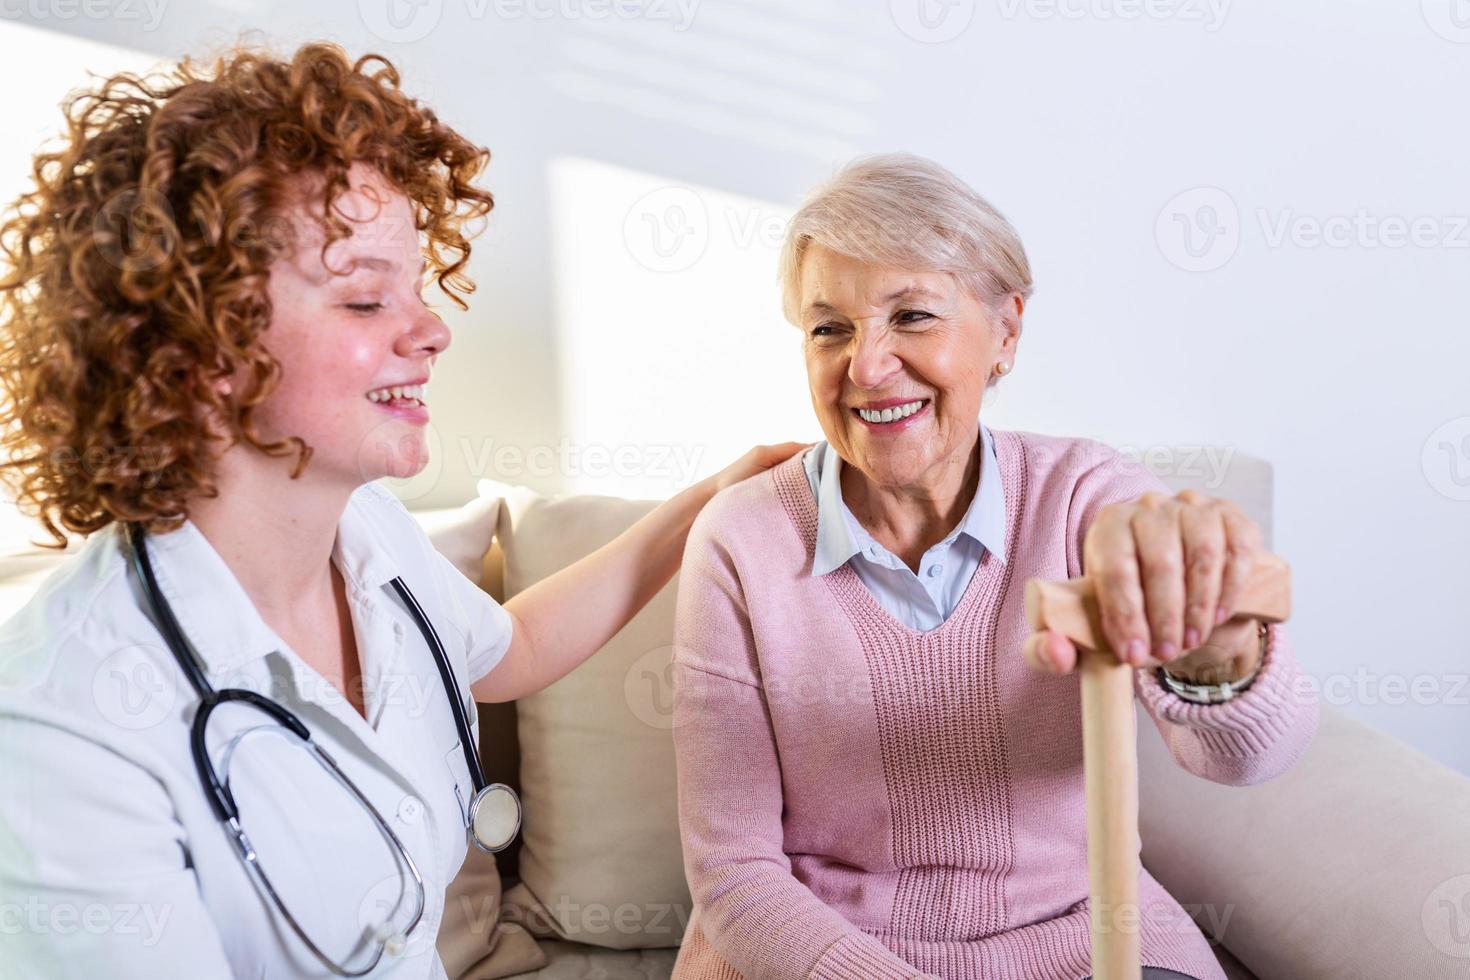 estreita relação positiva entre paciente idoso e cuidador. mulher sênior feliz falando com um cuidador amigável. jovem cuidadora bonita e mulher feliz mais velha foto